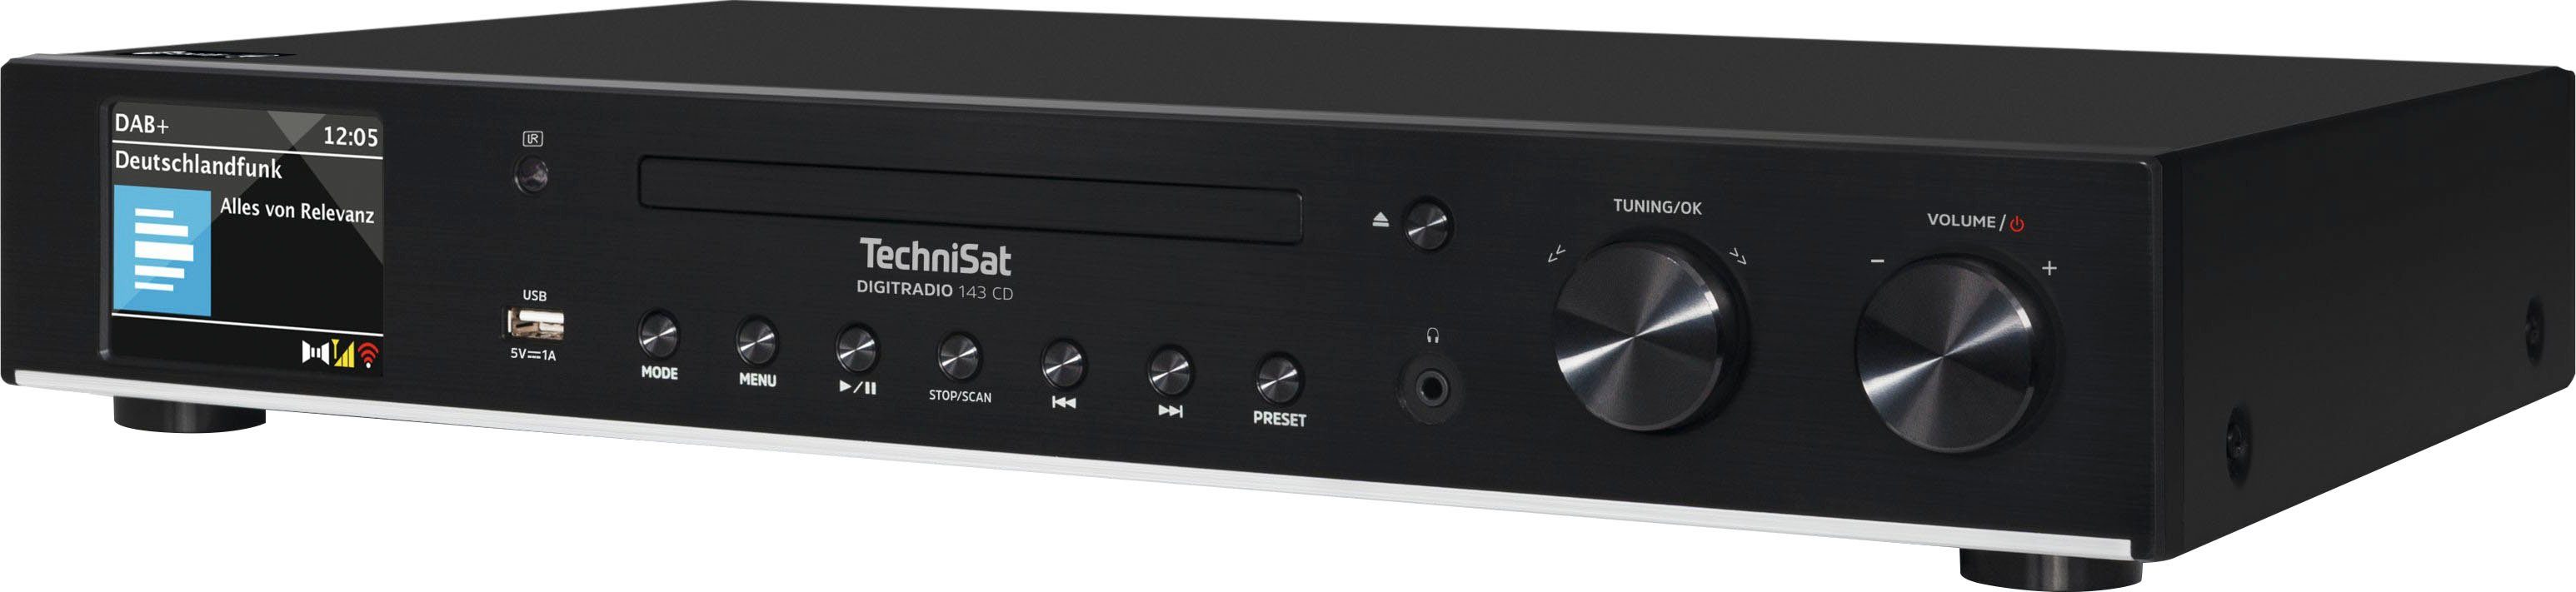 CD 143 schwarz Digitalradio UKW TechniSat (V3) Internetradio, mit (DAB) (Digitalradio (DAB), RDS) DIGITRADIO